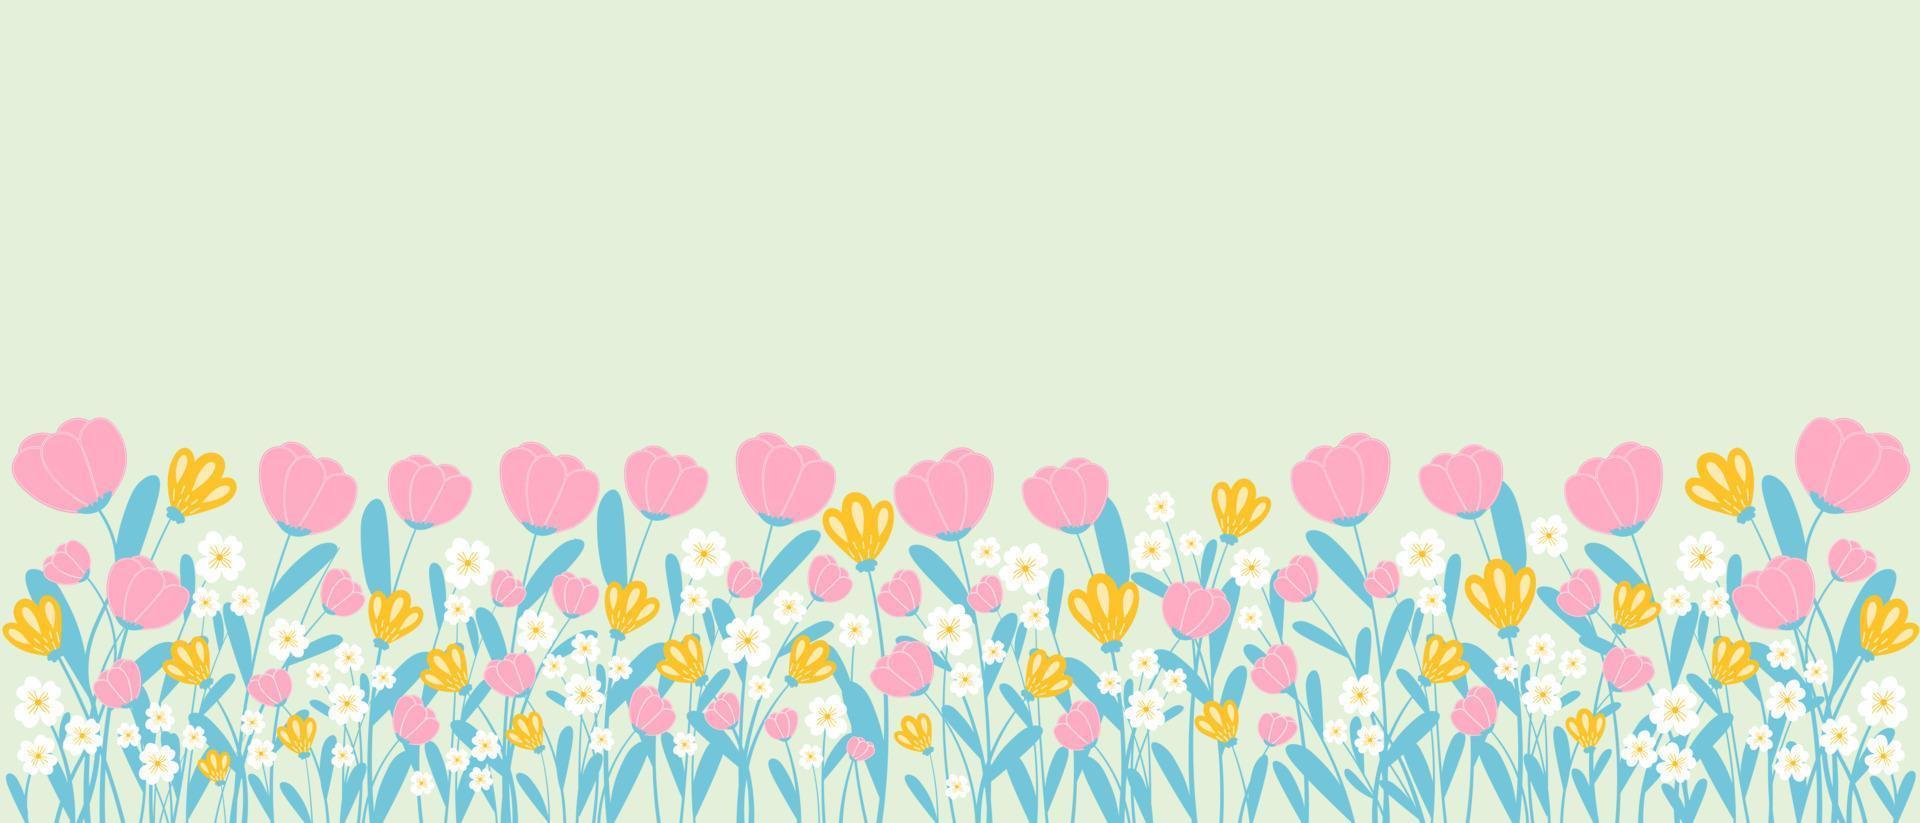 fondo de primavera con borde de flores florecientes y hojas en estilo dibujado a mano, plantilla de banner horizontal vector